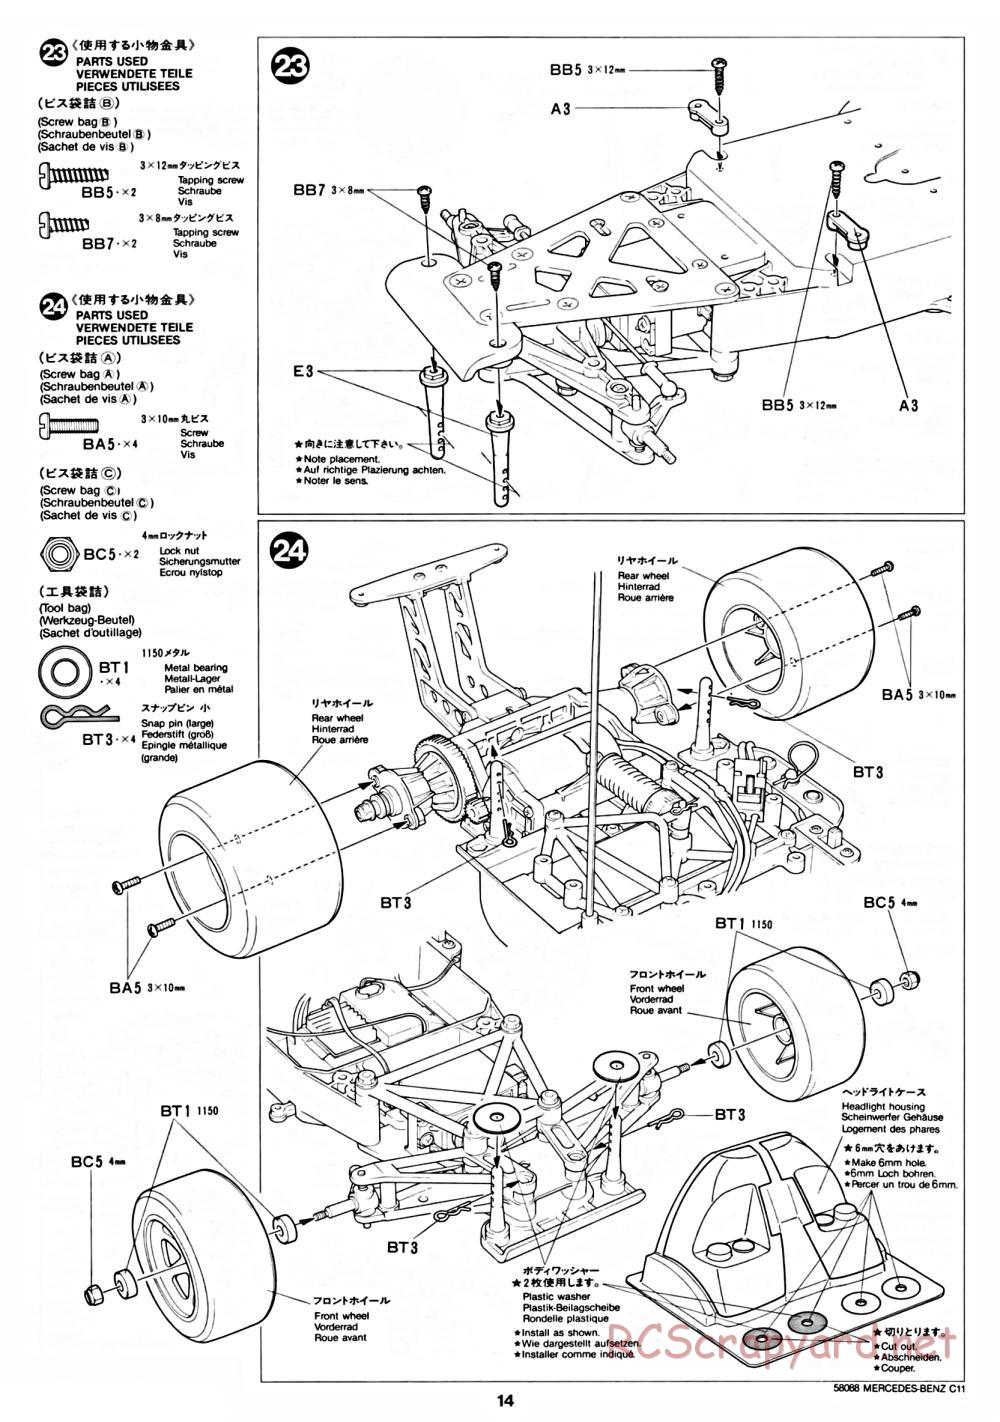 Tamiya - Mercedes Benz C11 - 58088 - Manual - Page 14